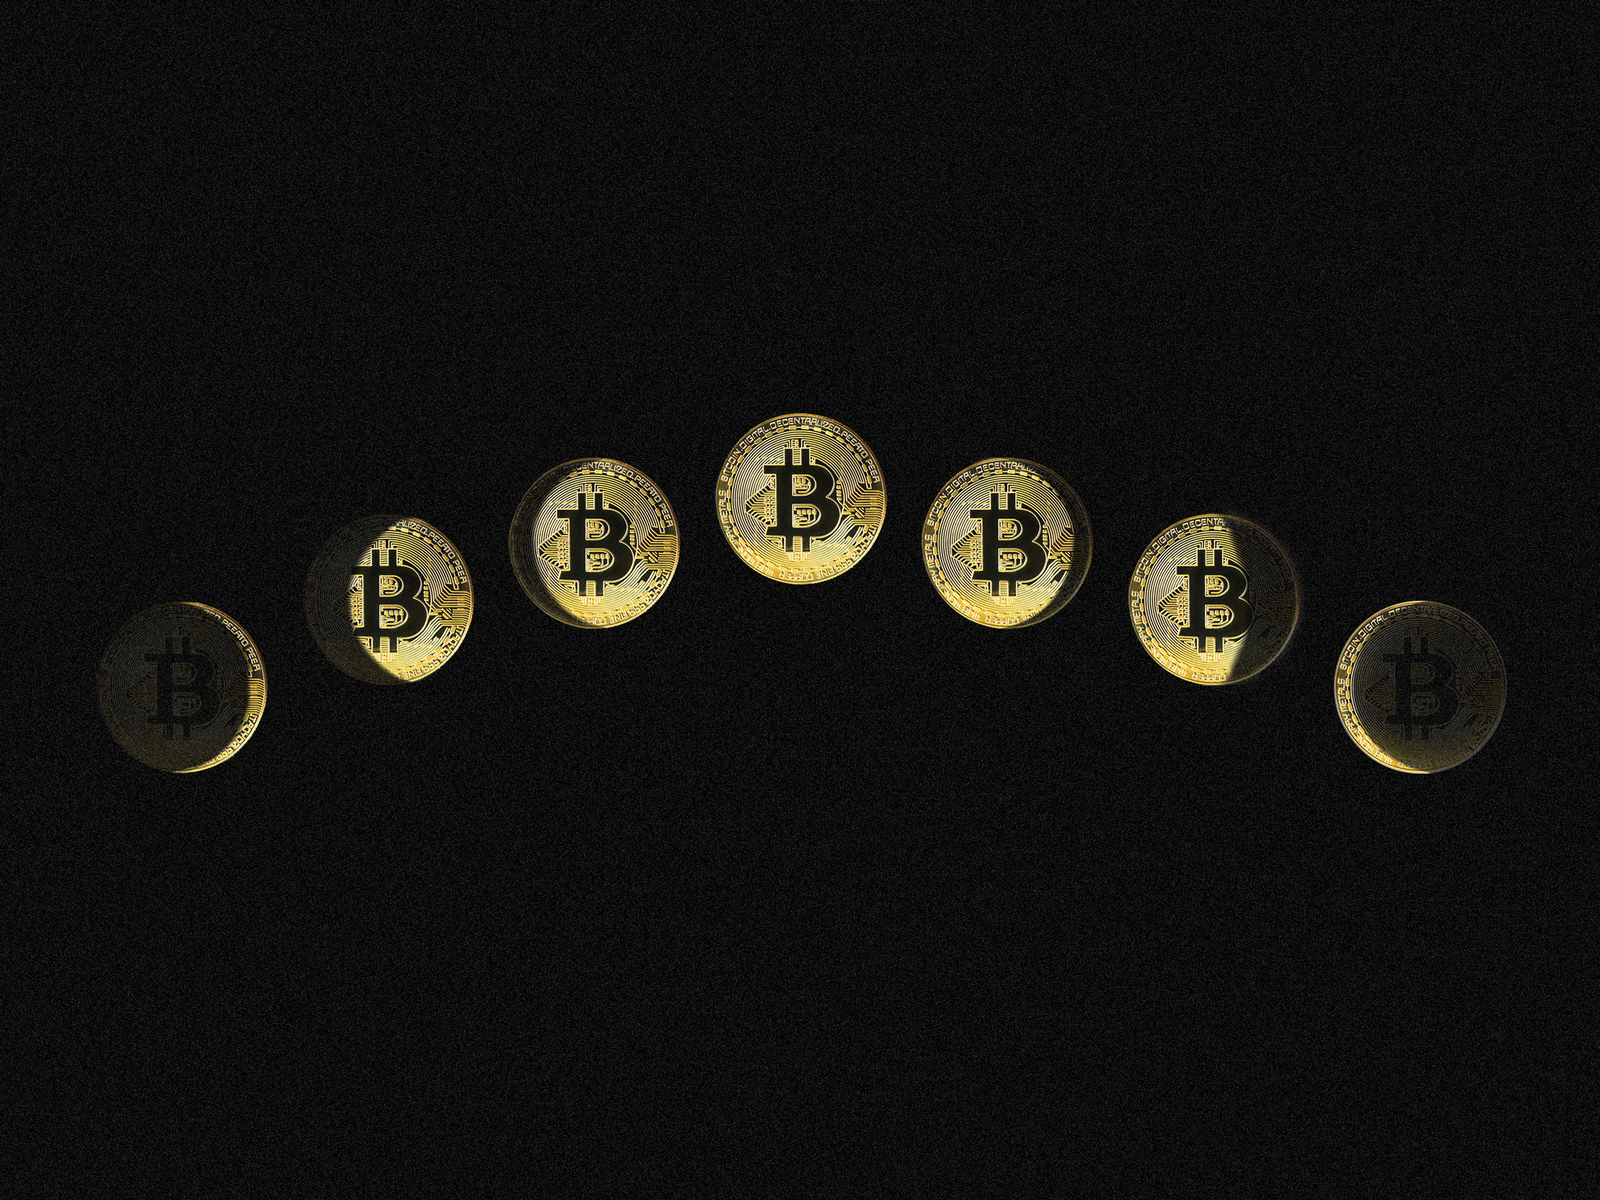 10 year anniversary of bitcoin